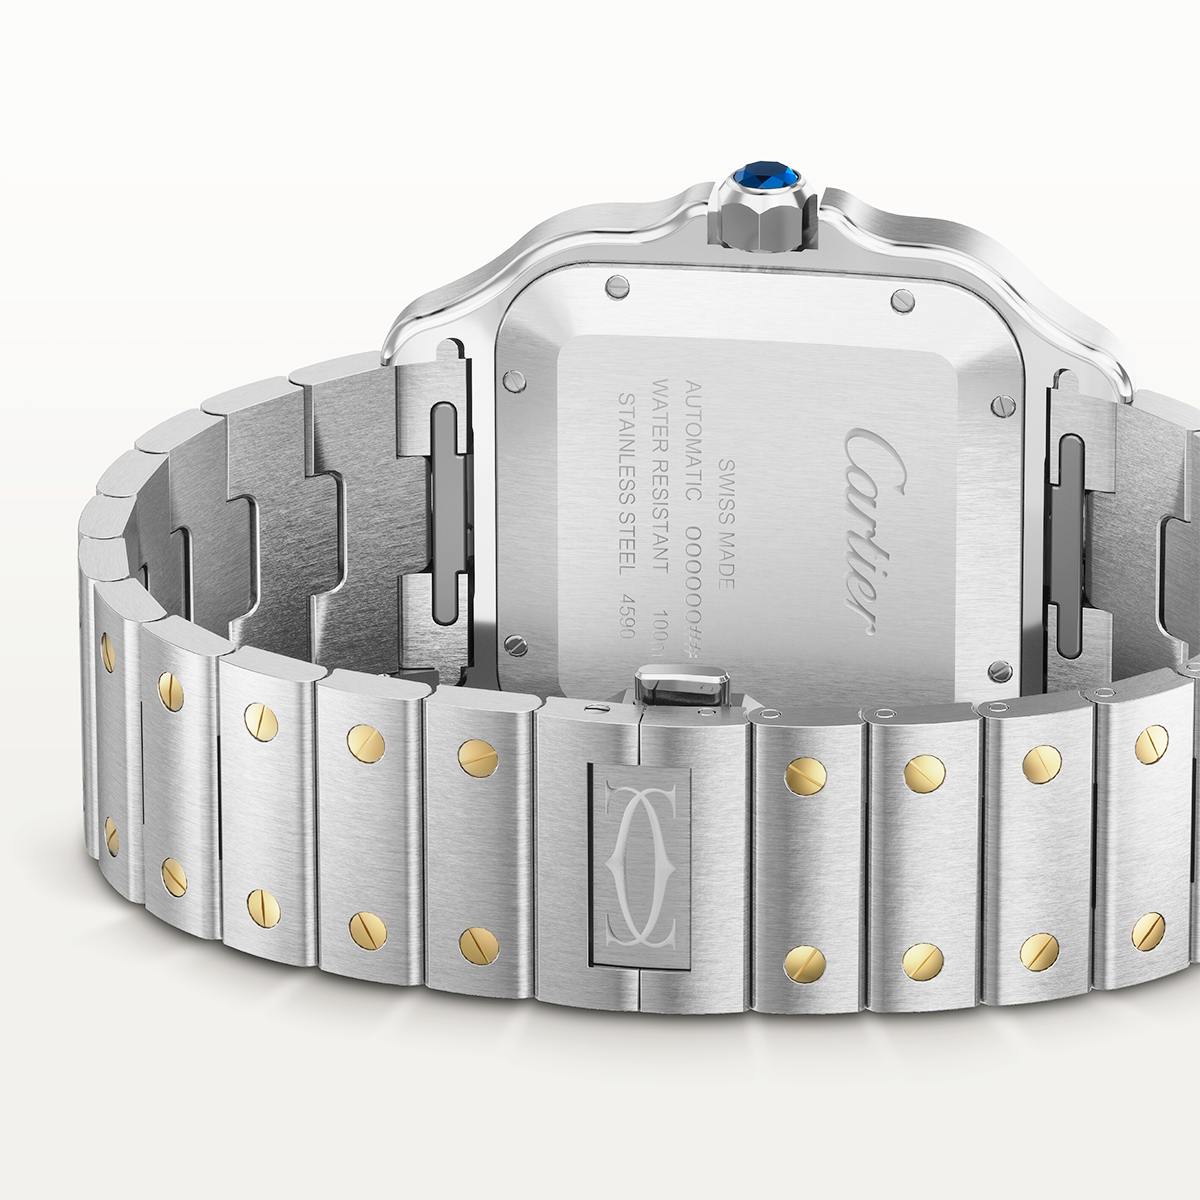 Santos de Cartier Large Two-Tone Grey Dial Bracelet/Strap Watch